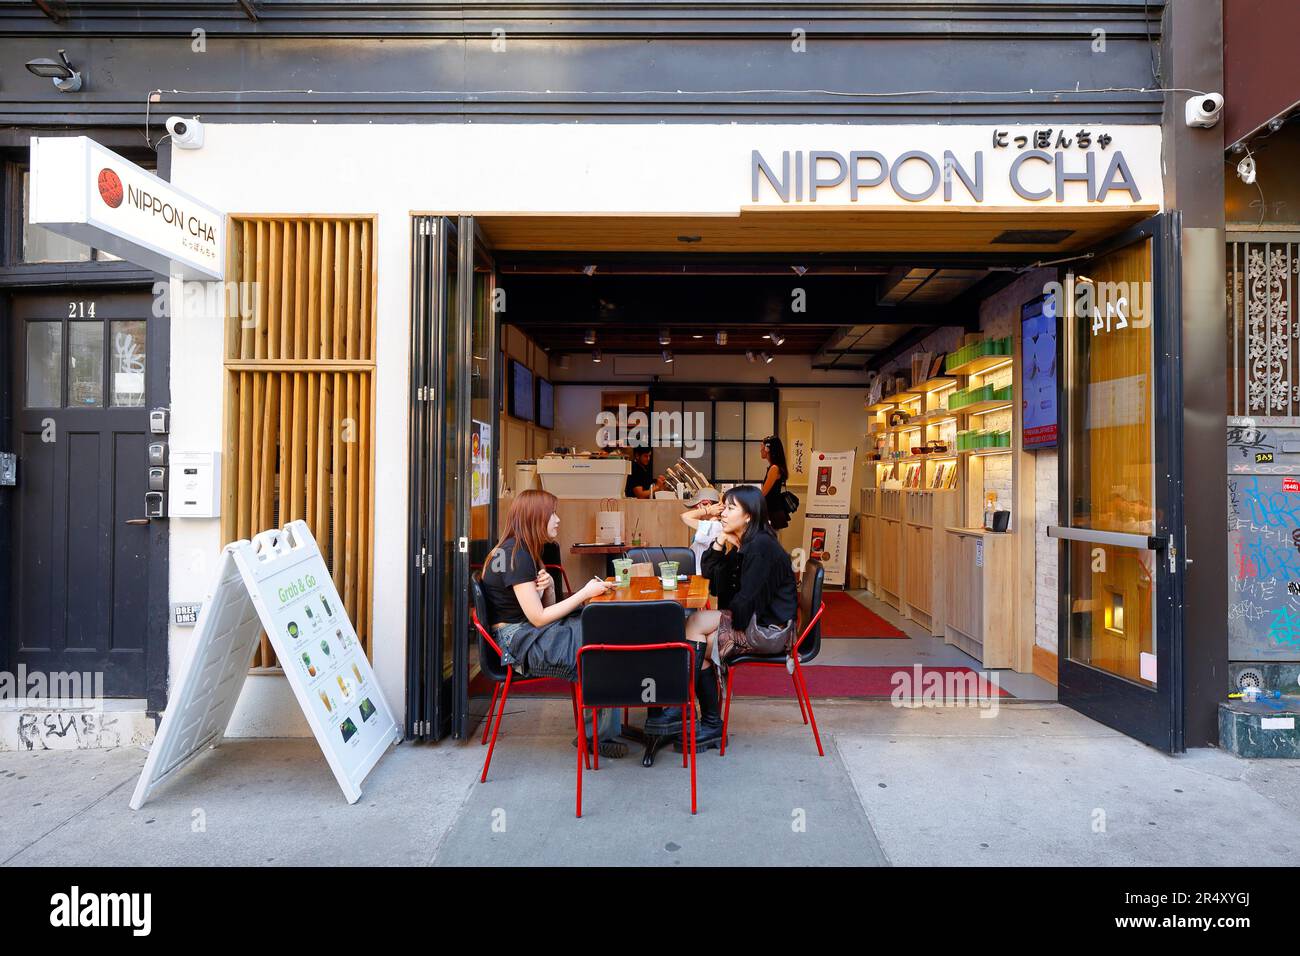 Nippon Cha にっほんちゃ, 214 Bedford Ave, Brooklyn, New York, magasin de thé japonais et café dans le quartier de Wiliamsburg, New York. Banque D'Images